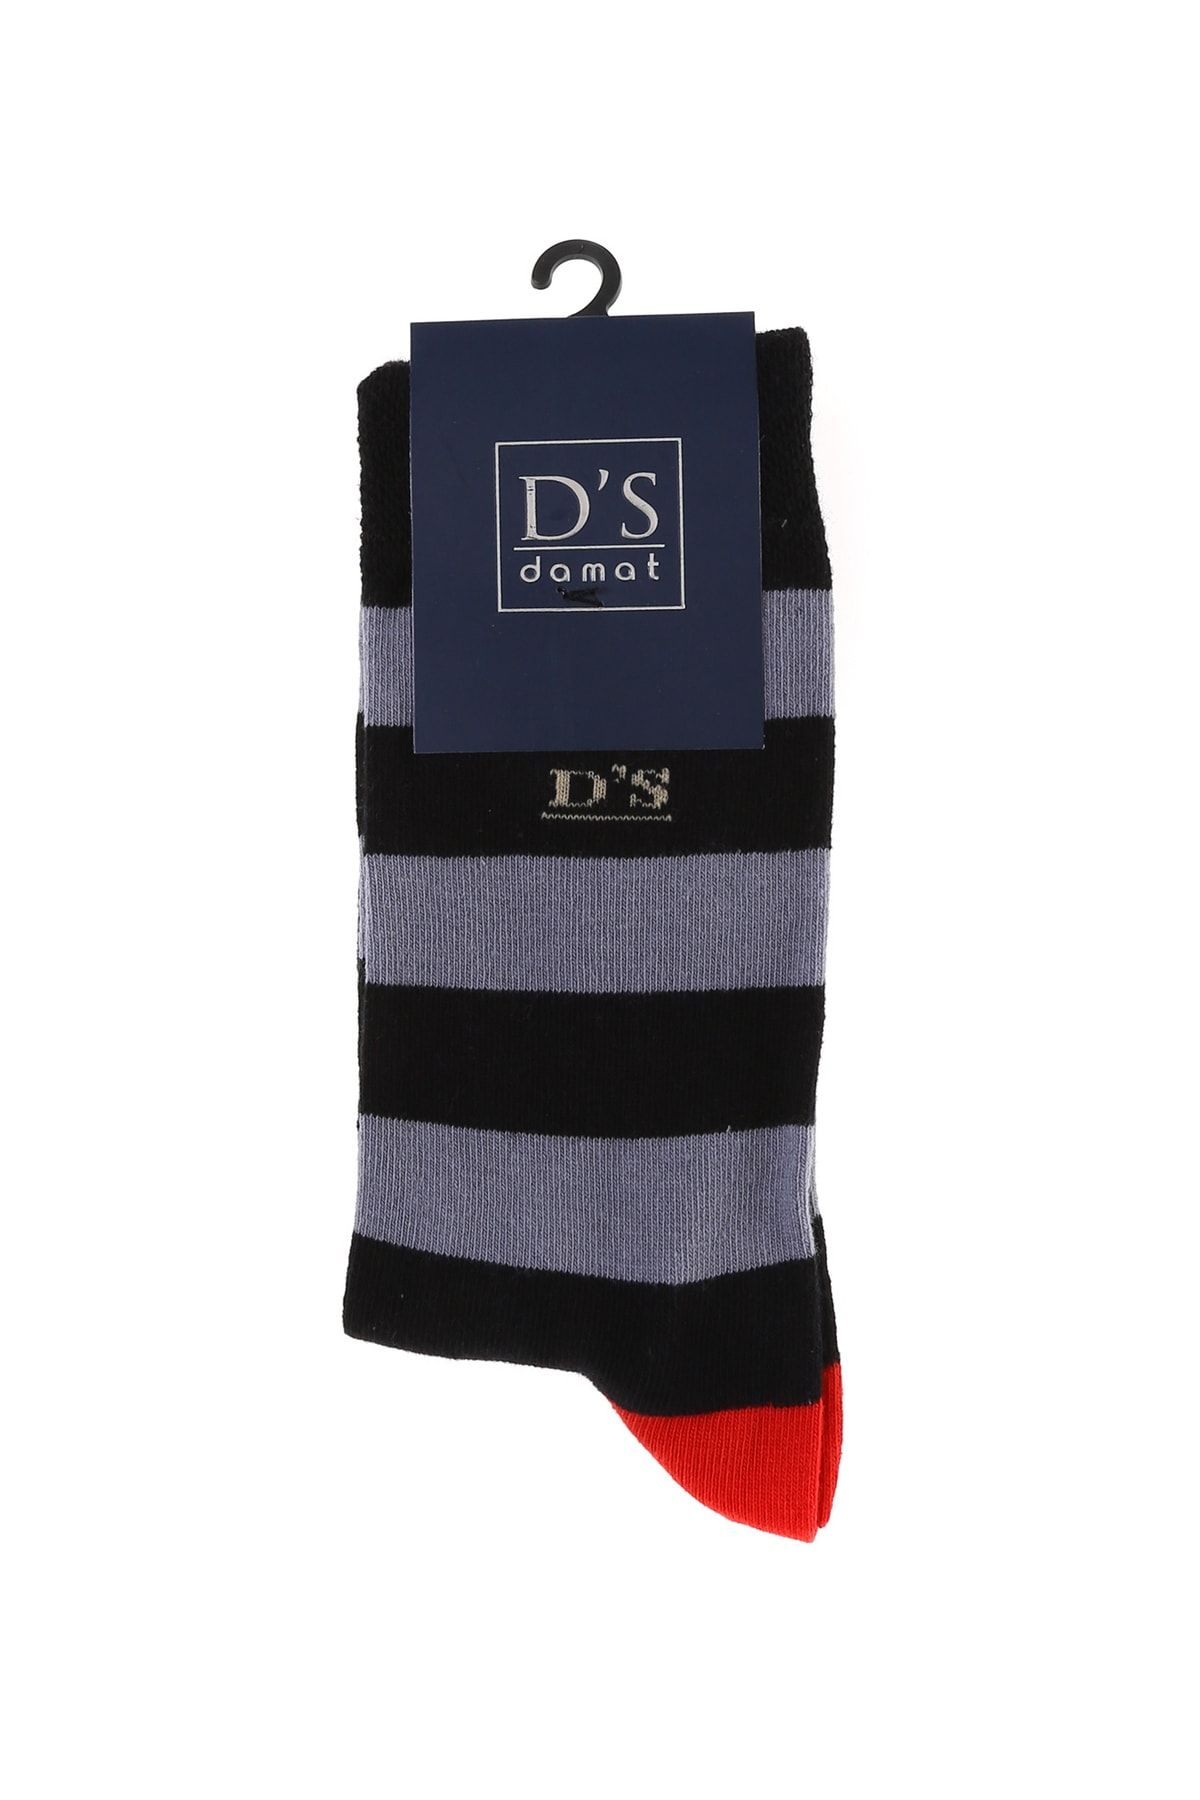 D'S Damat جورابهای پنبه ای مردانه با جوراب های الگوی مرد سیاه دایره